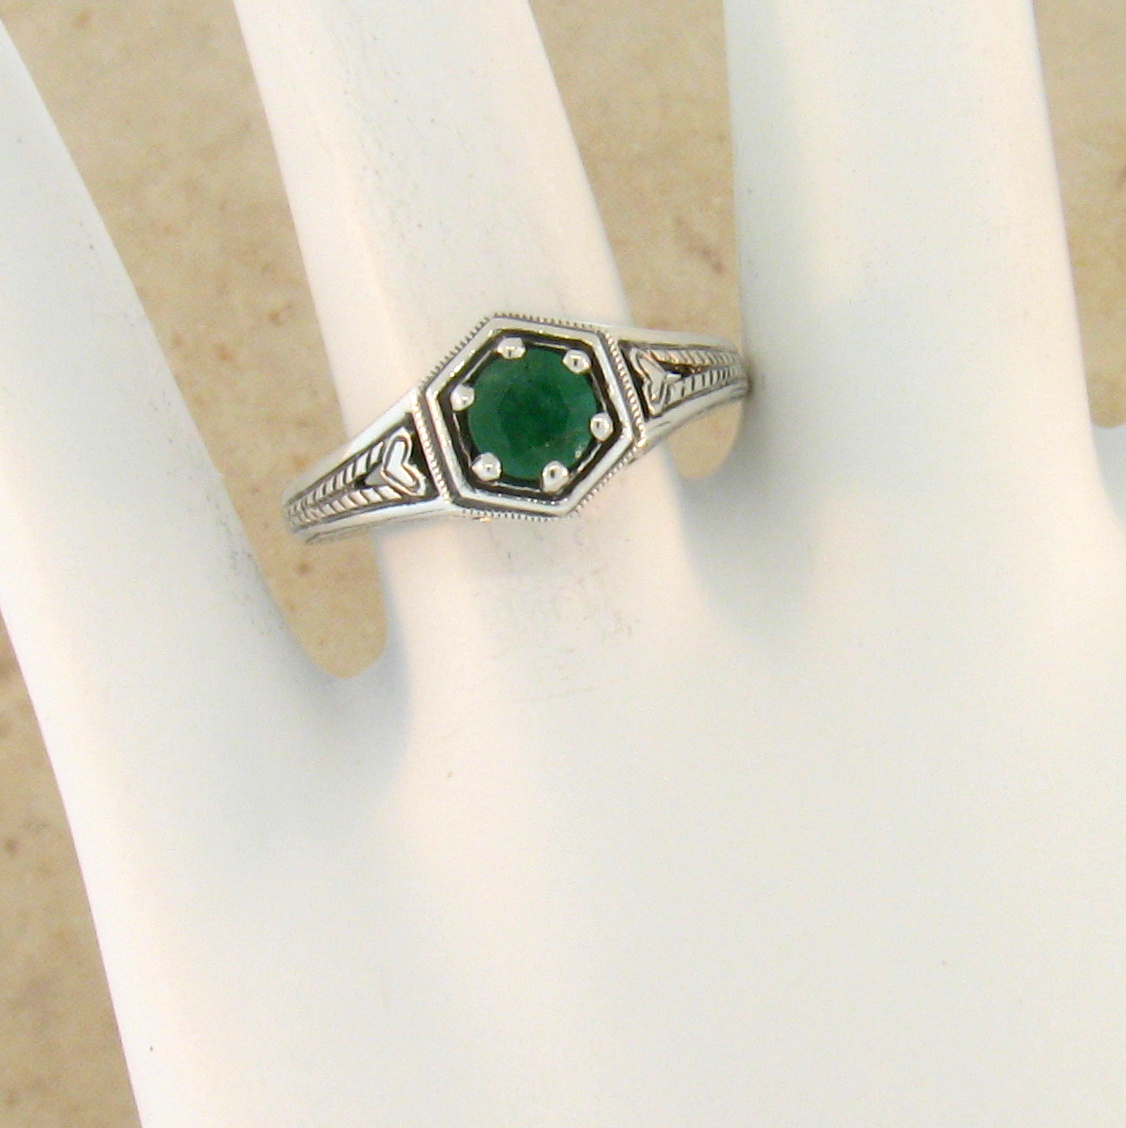 Details about  / Art Deco Vintage 4.80 ct Emerald Sapphire bezel Antique Set Ring 925 Silver Y575